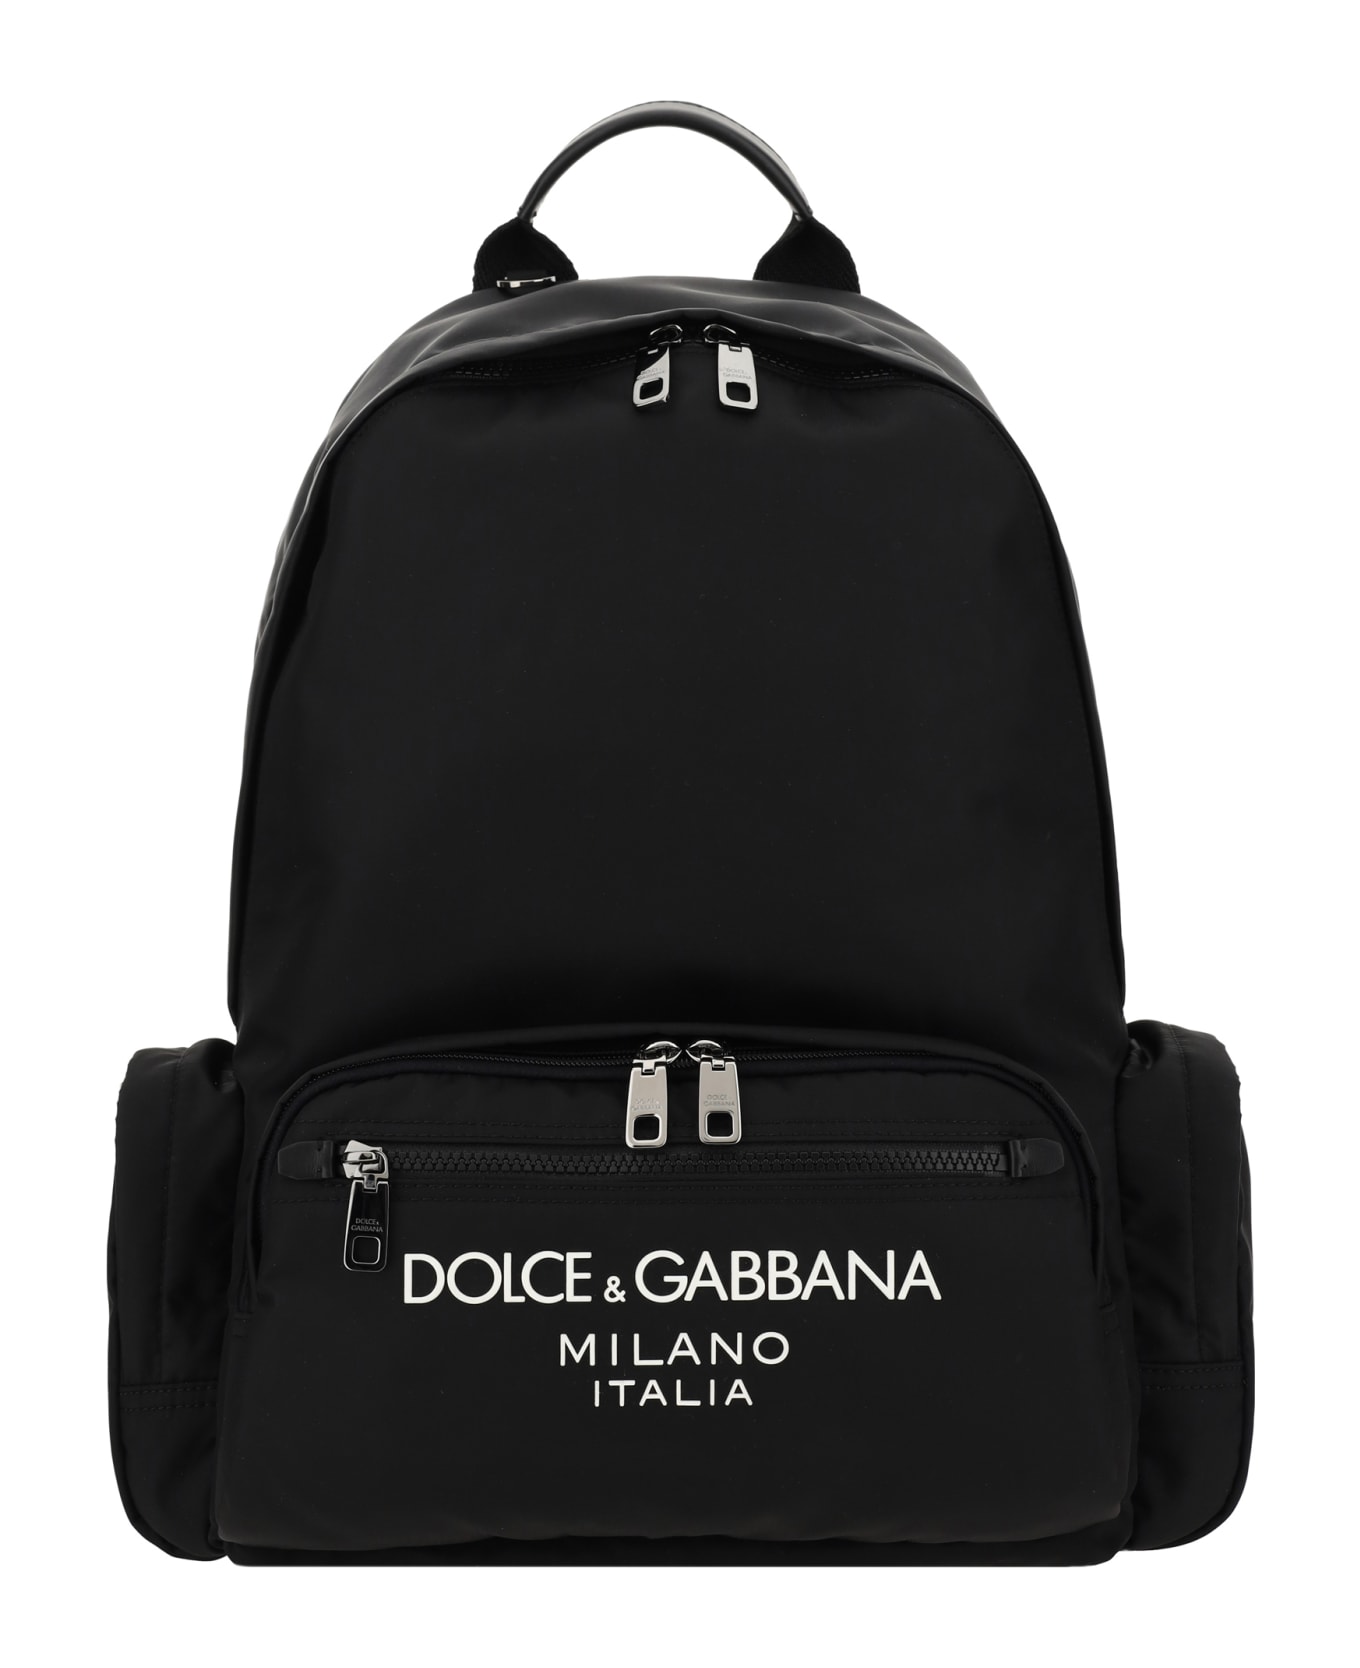 Dolce & Gabbana Backpack - Nero Nero